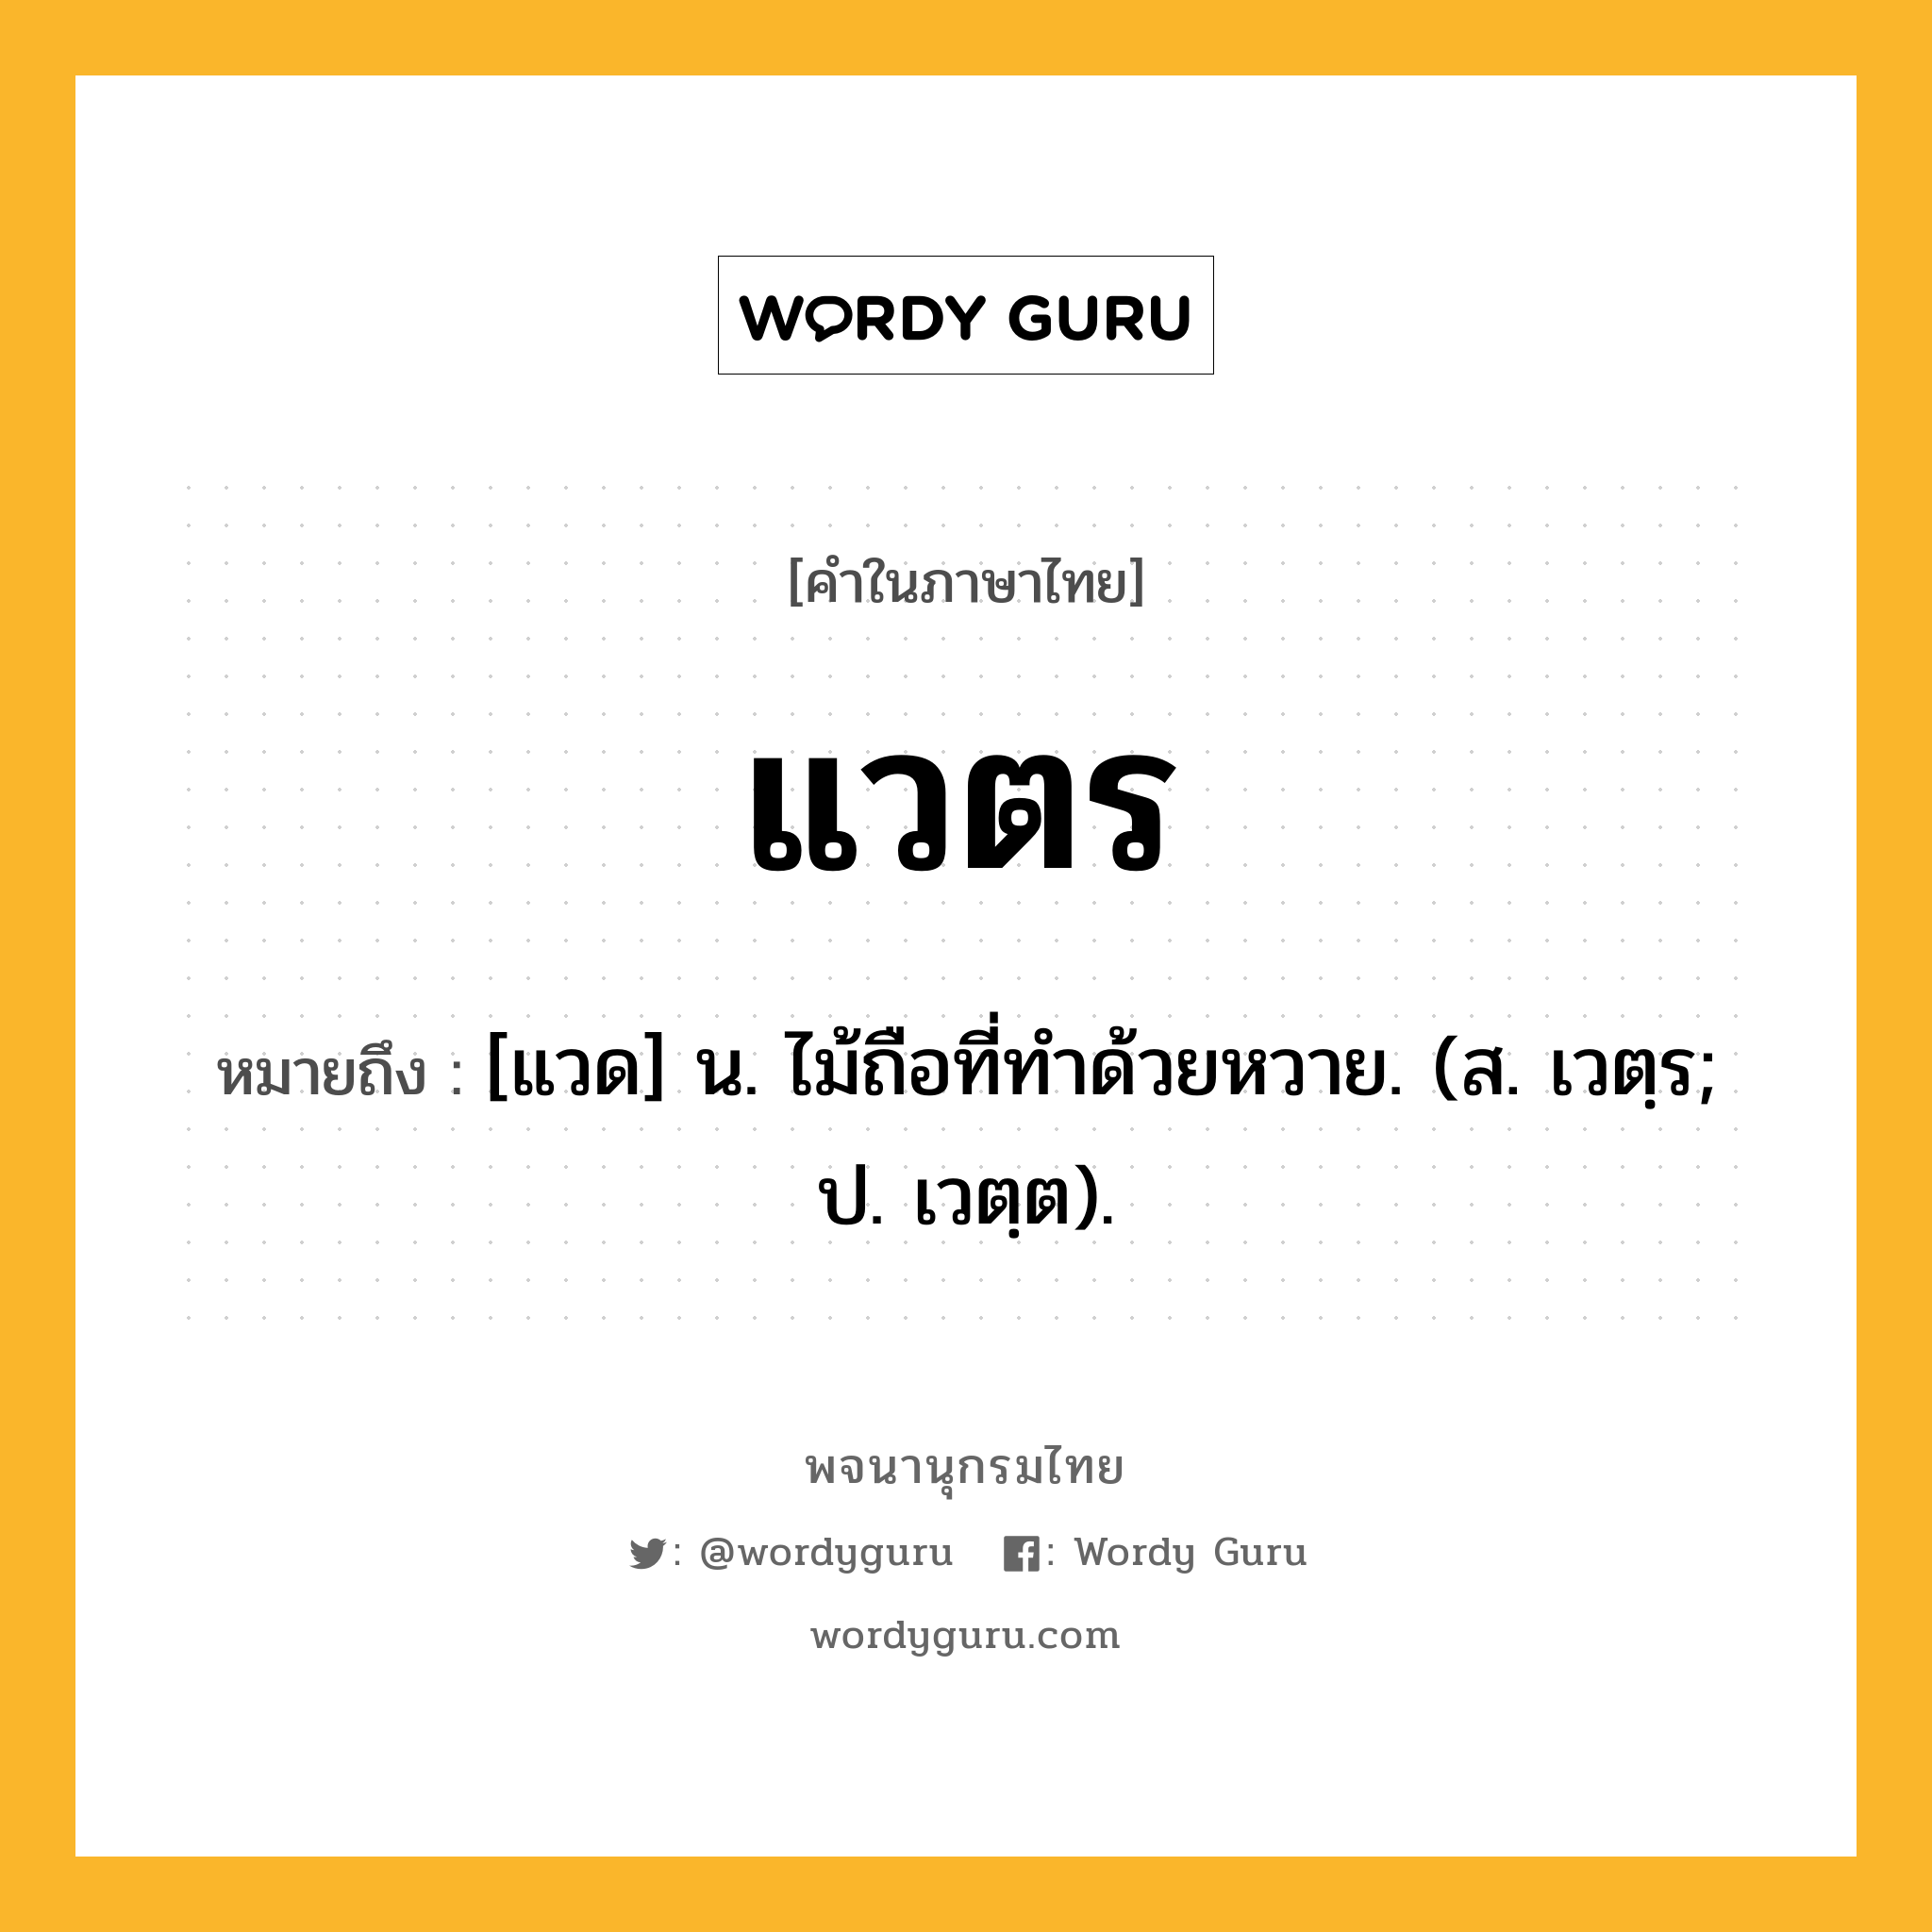 แวตร หมายถึงอะไร?, คำในภาษาไทย แวตร หมายถึง [แวด] น. ไม้ถือที่ทําด้วยหวาย. (ส. เวตฺร; ป. เวตฺต).